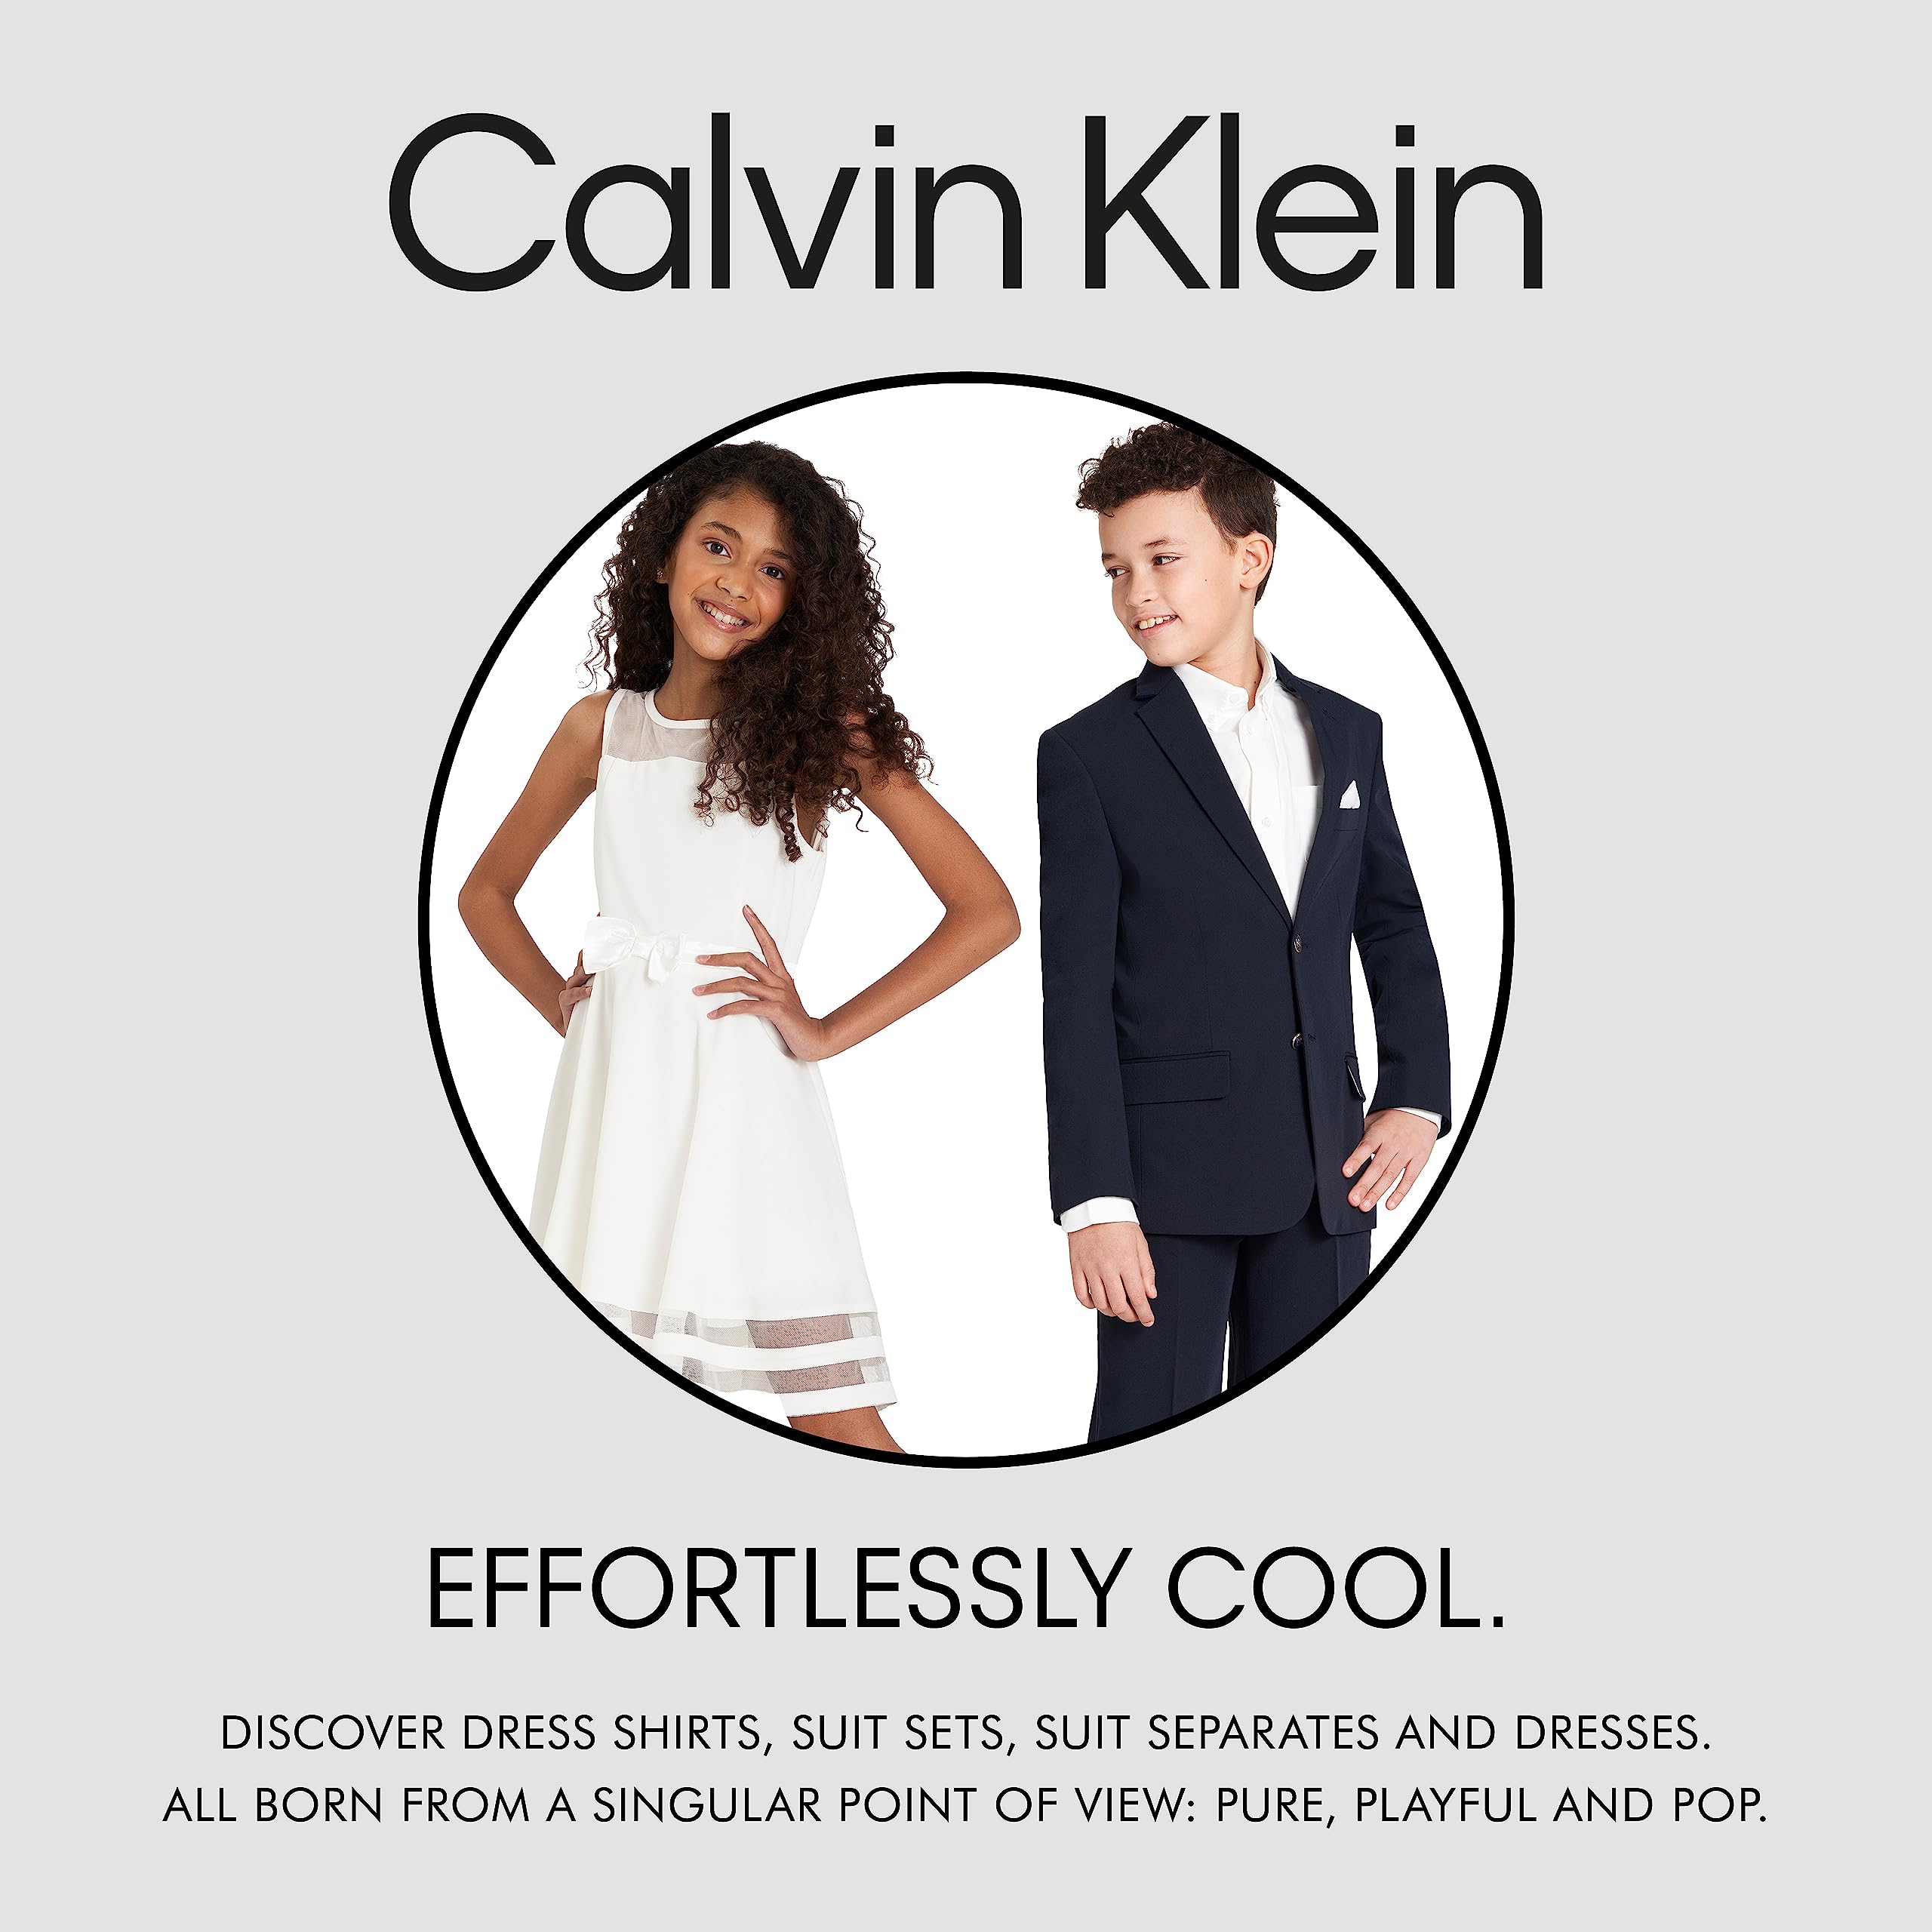 Calvin Klein Baby Boys' 4-Piece Formal Set, Includes Dress Shirt with Bow Tie, Suit Vest & Dress Pants